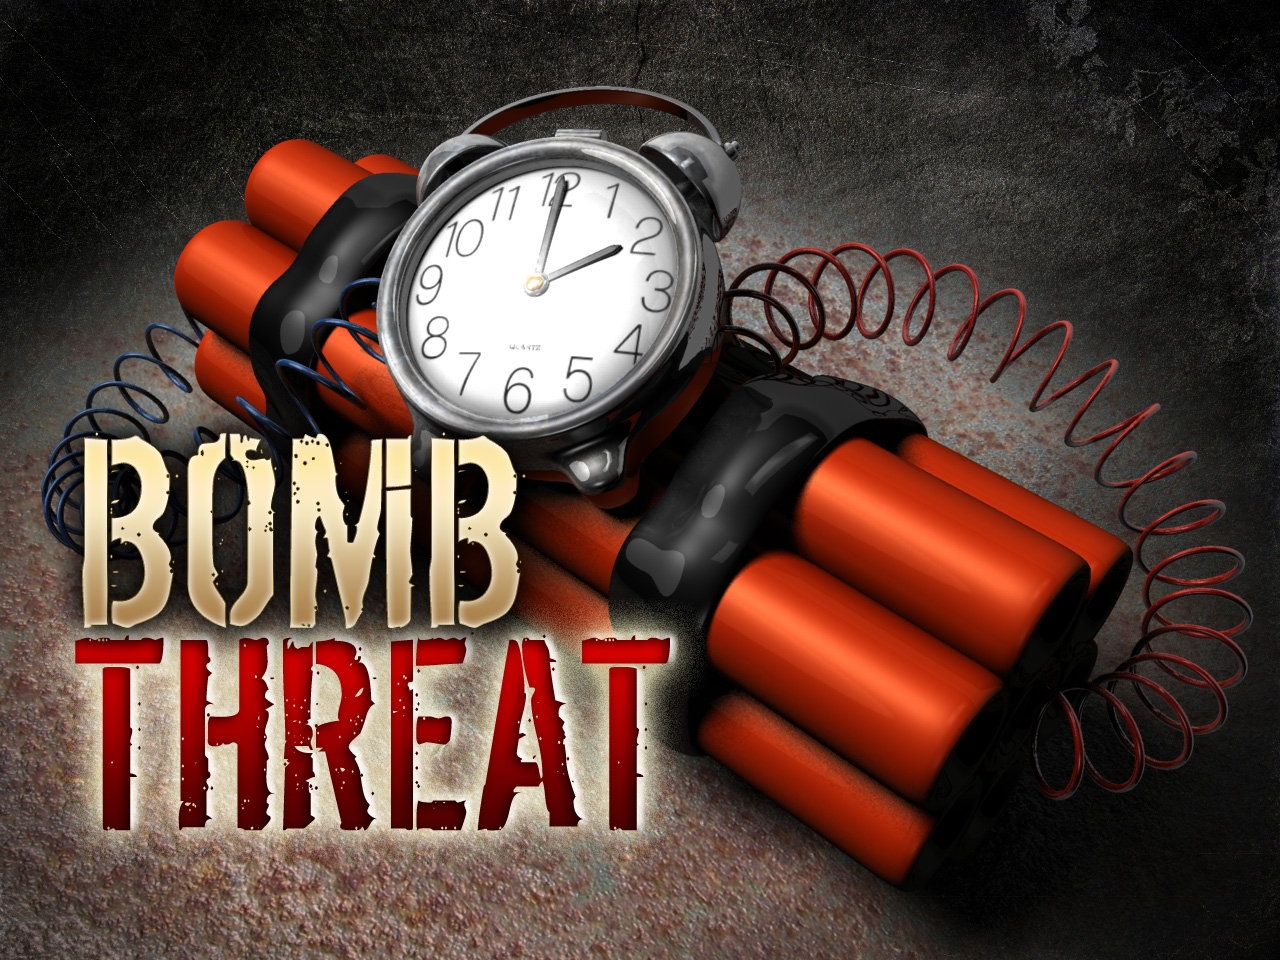 Mumbai Red Alert: Bomb threats on Mumbai Airport and Taj Hotel